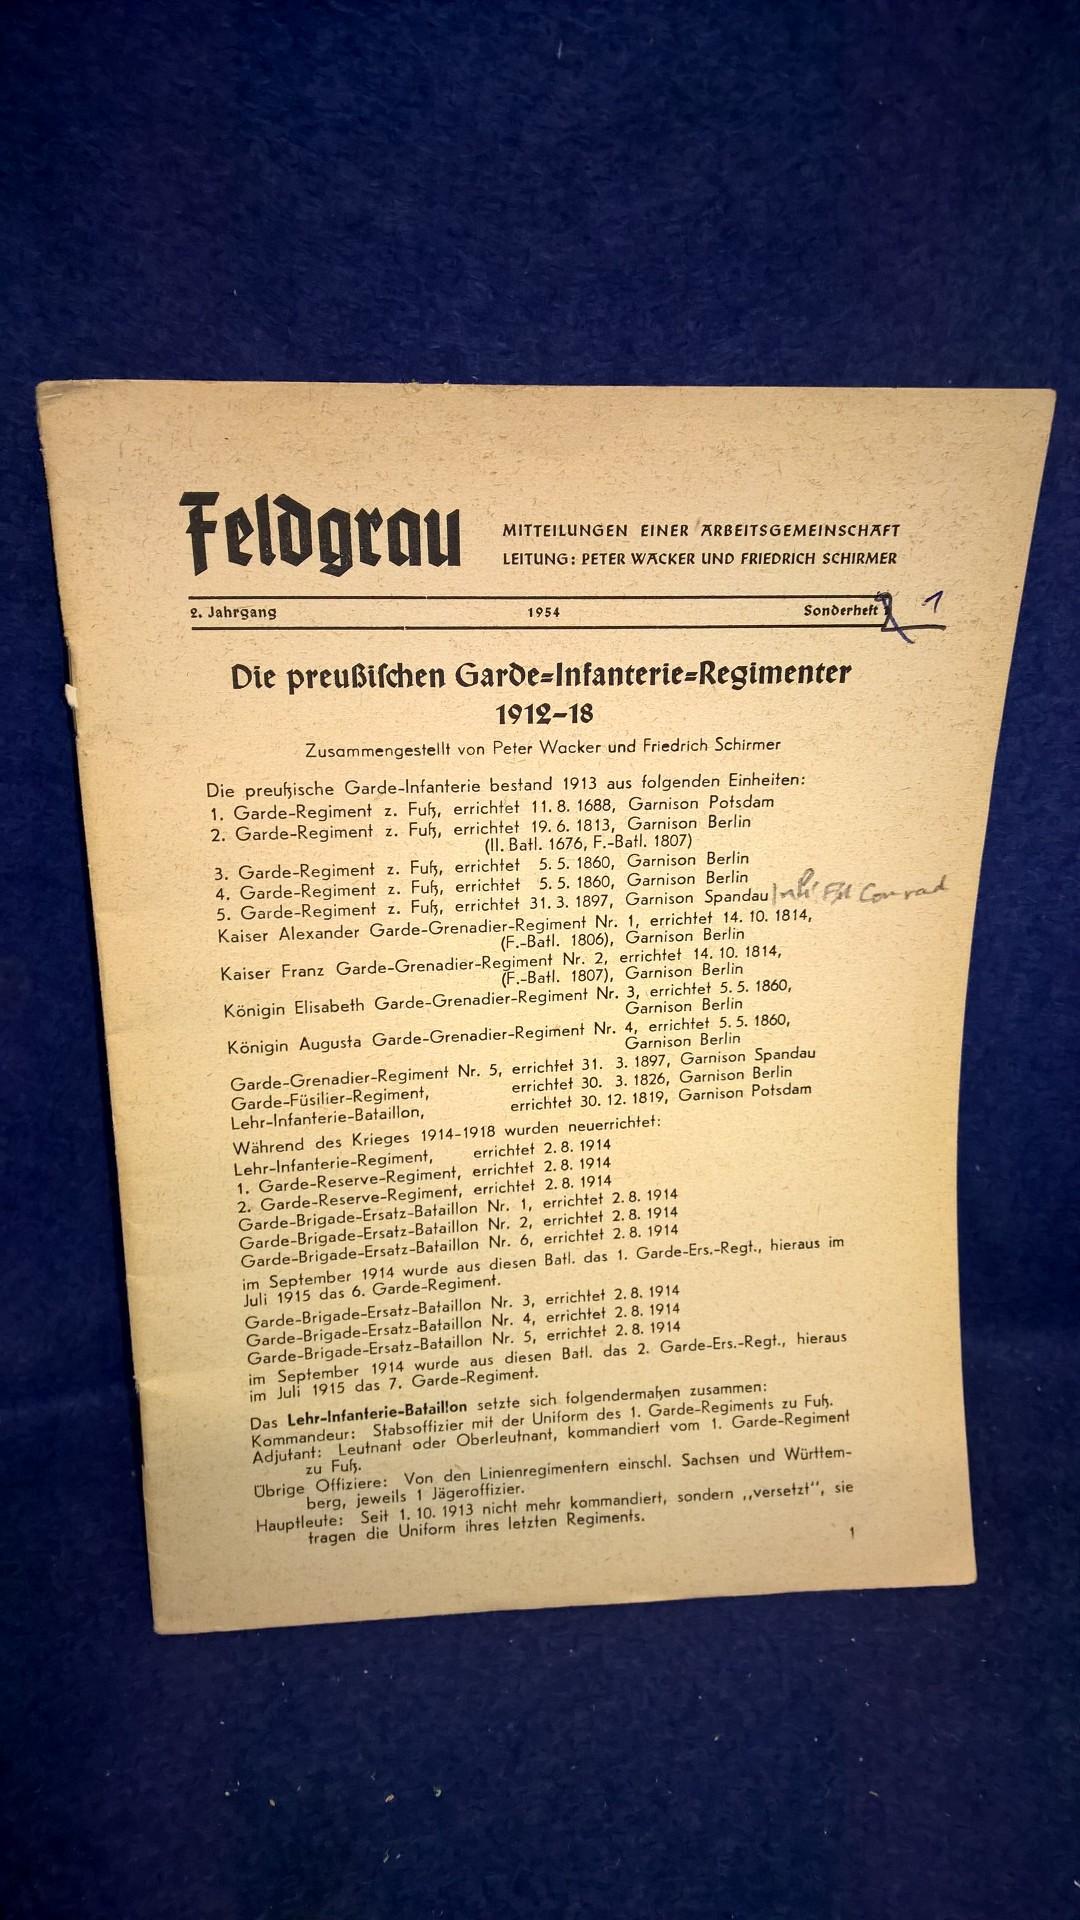 Feldgrau. Mitteilungen einer Arbeitsgemeinschaft. Sonderheft 1: Die preußischen Garde-Infanterie-Regimenter 1912-1918.